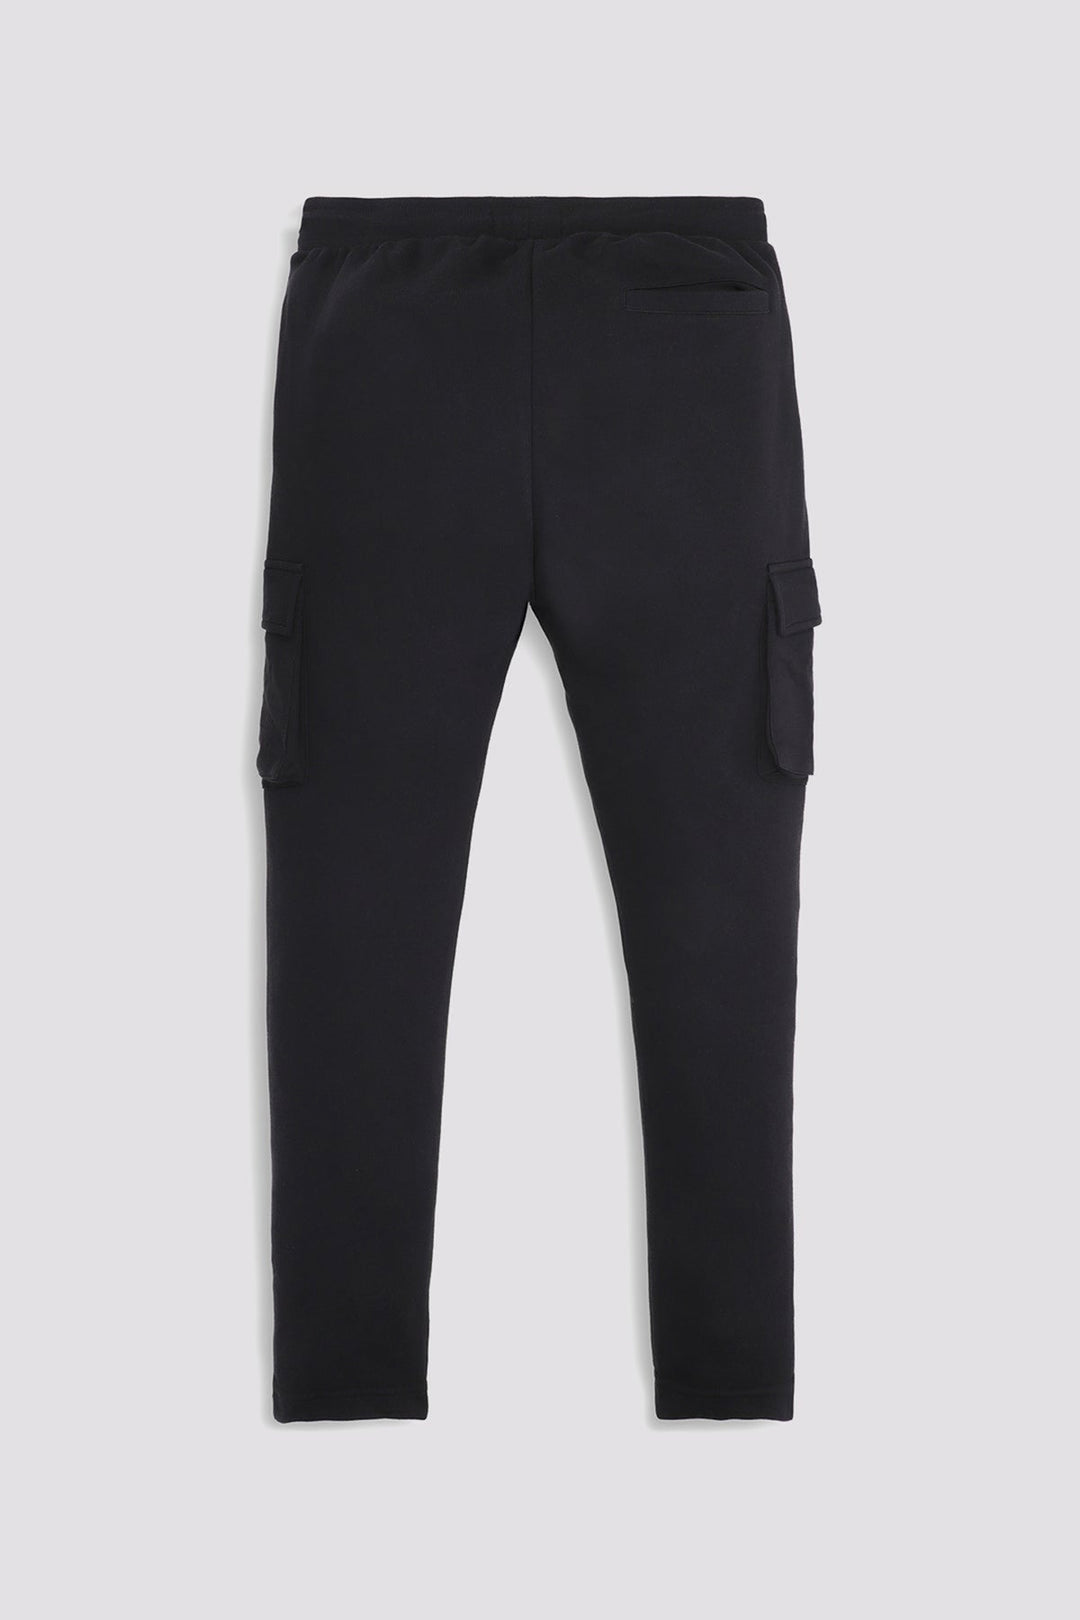 Sclothers Black Cargo Jog Pants (Plus Size) - W23 - MTR100P